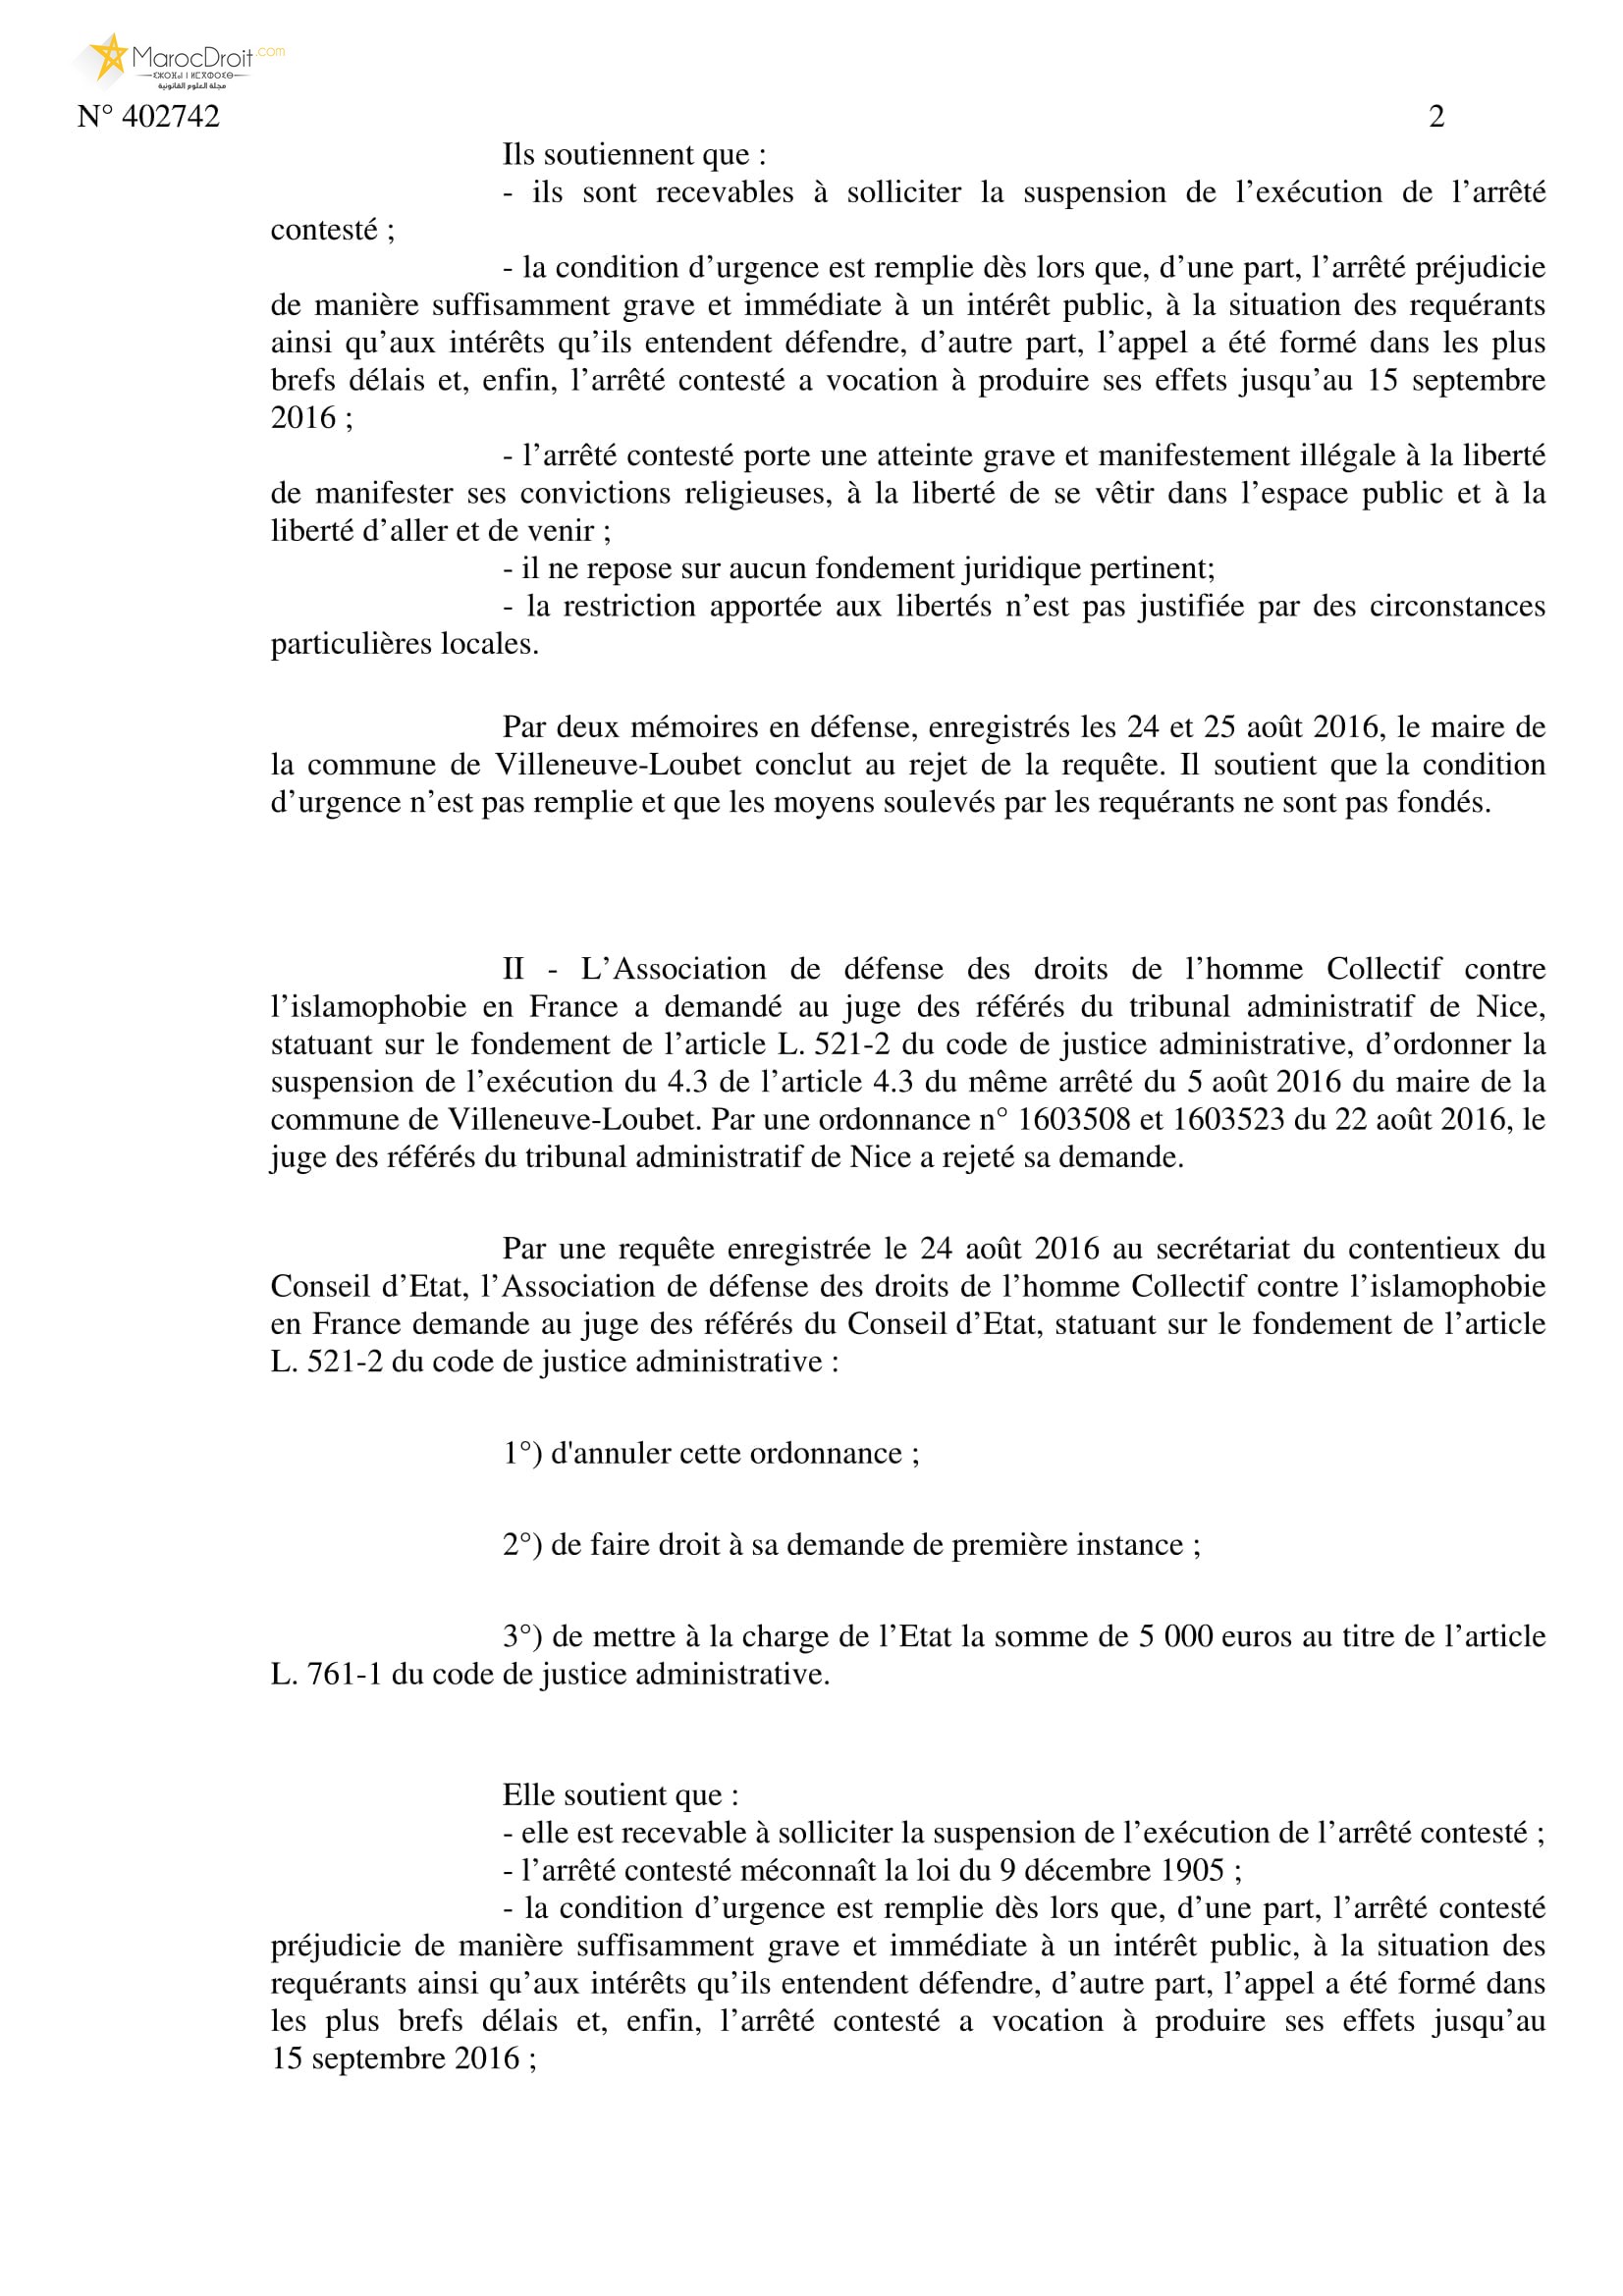 نسخة كاملة من قرار مجلس الدولة الفرنسي الصادر بإلغاء القرار الإداري القاضي بمنع ما يسمى "بلباس البحر الإسلامي"